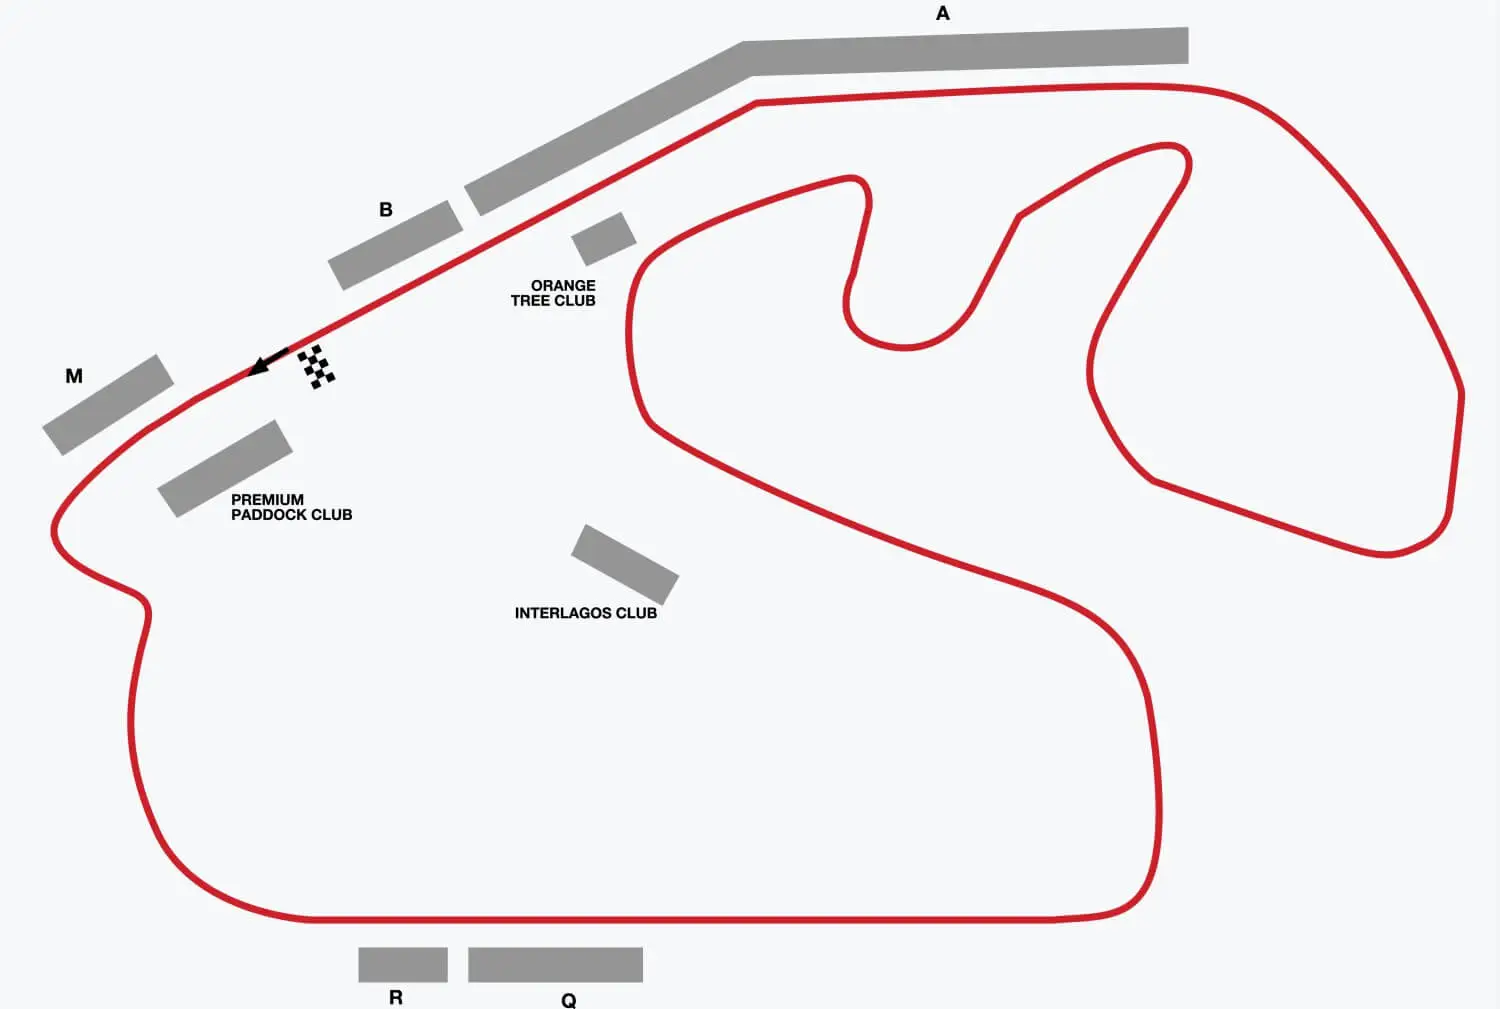 Brazilian Grand Prix schedule